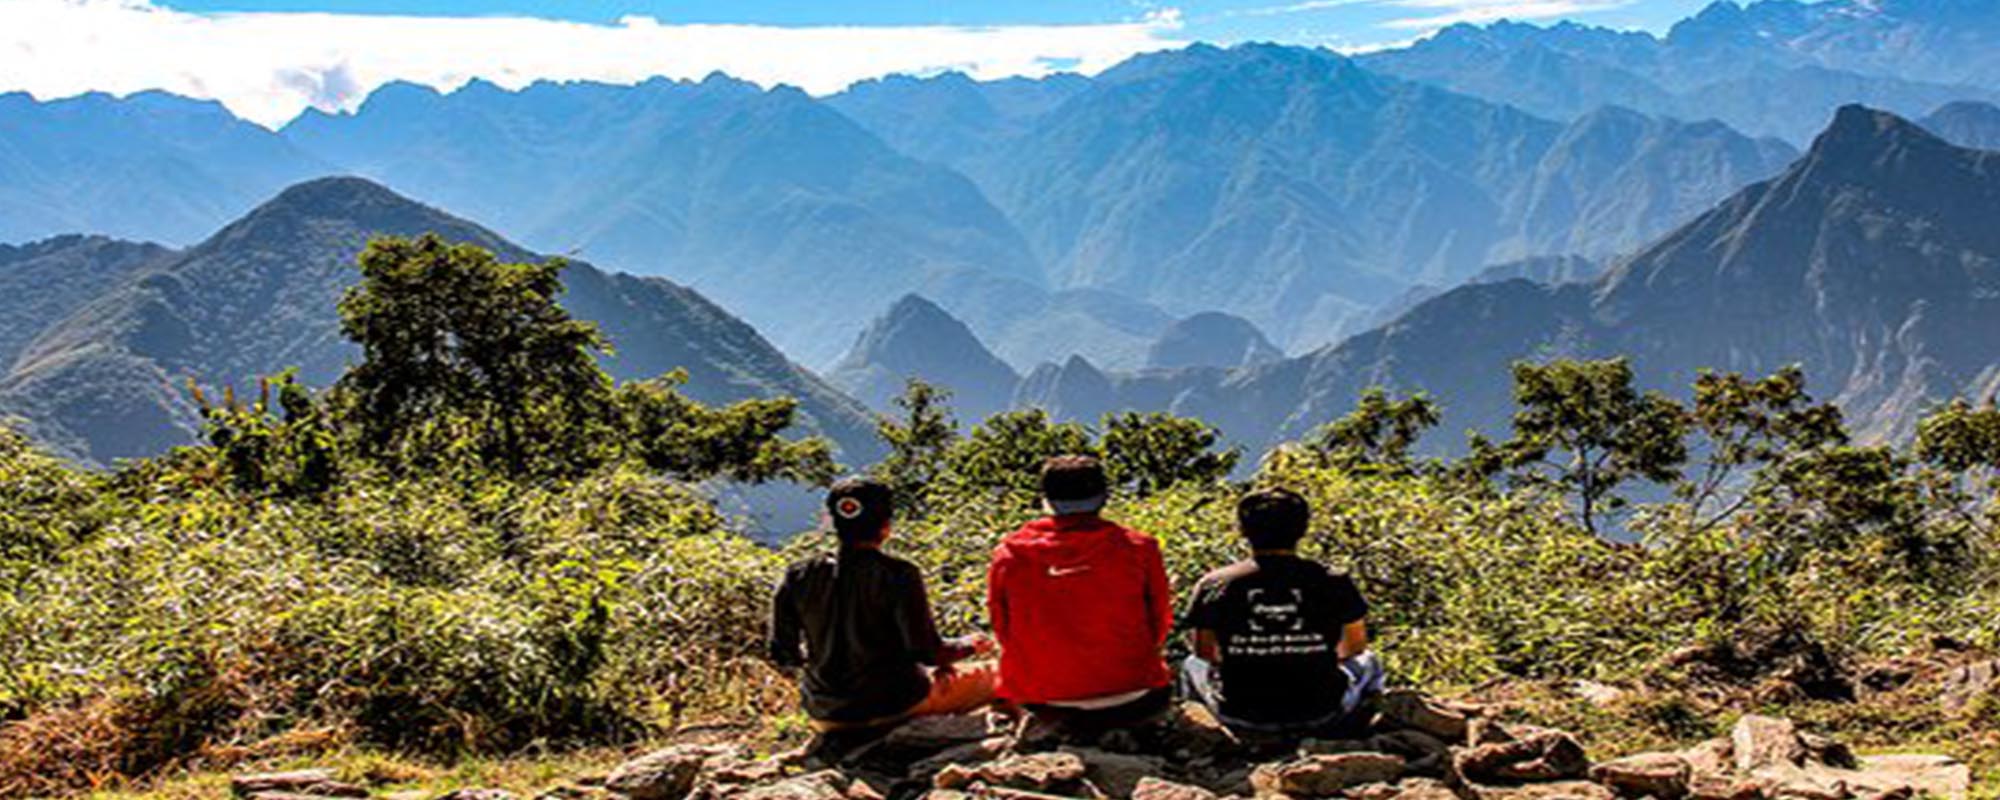 TOURS MAP: Mountain Trekking in Peru - Okidoki Travel Peru